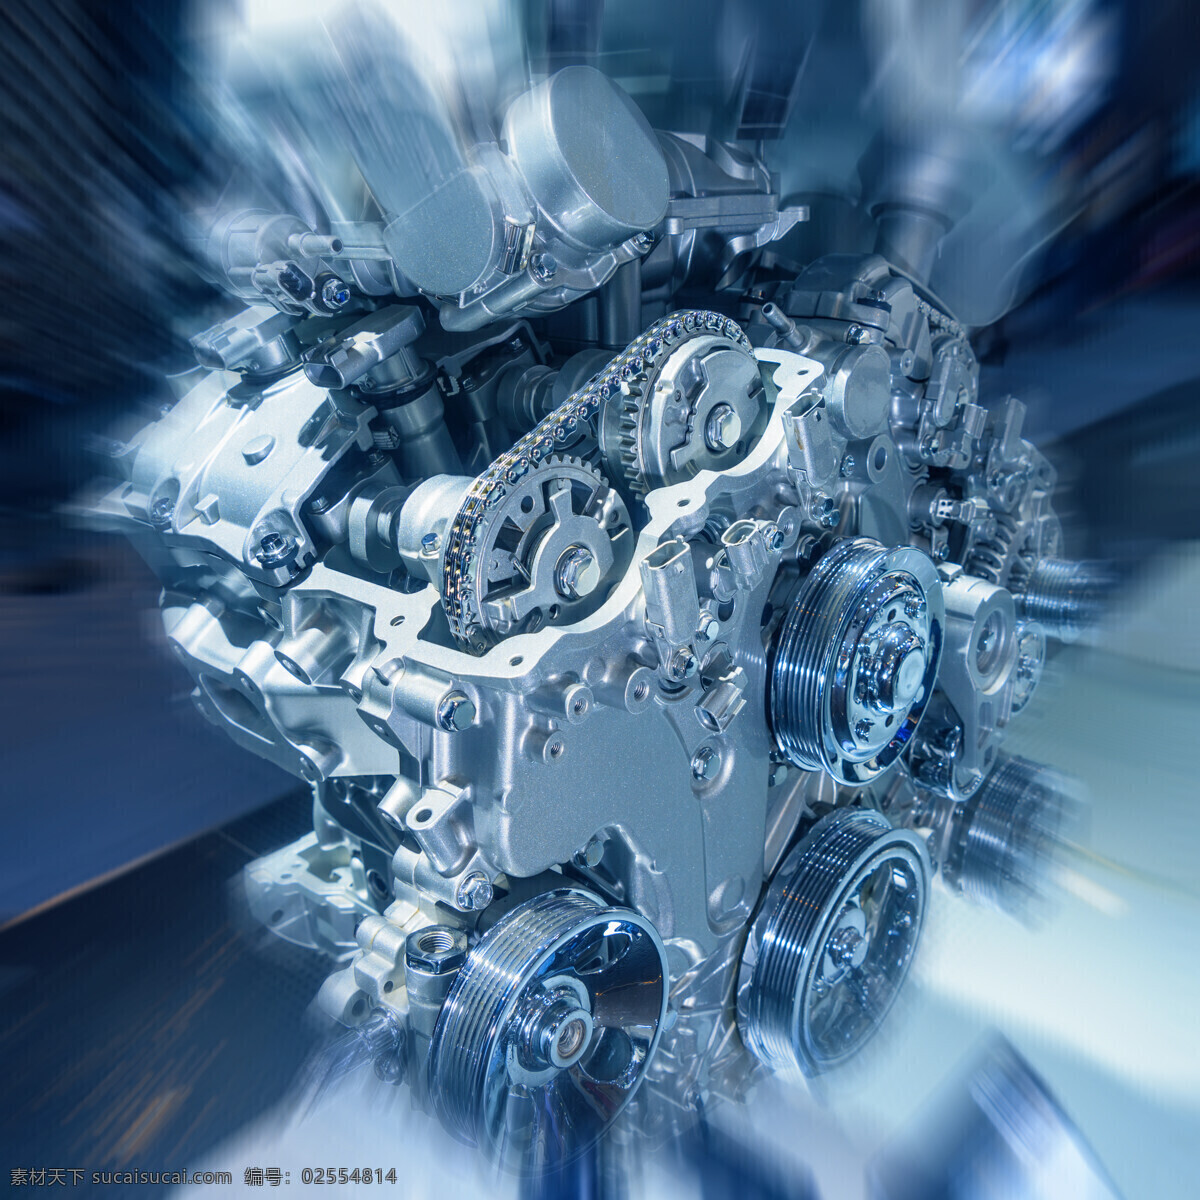 引擎 链条 零件 引擎发动机 发动机 机械零件 引擎零件构造 其他类别 现代科技